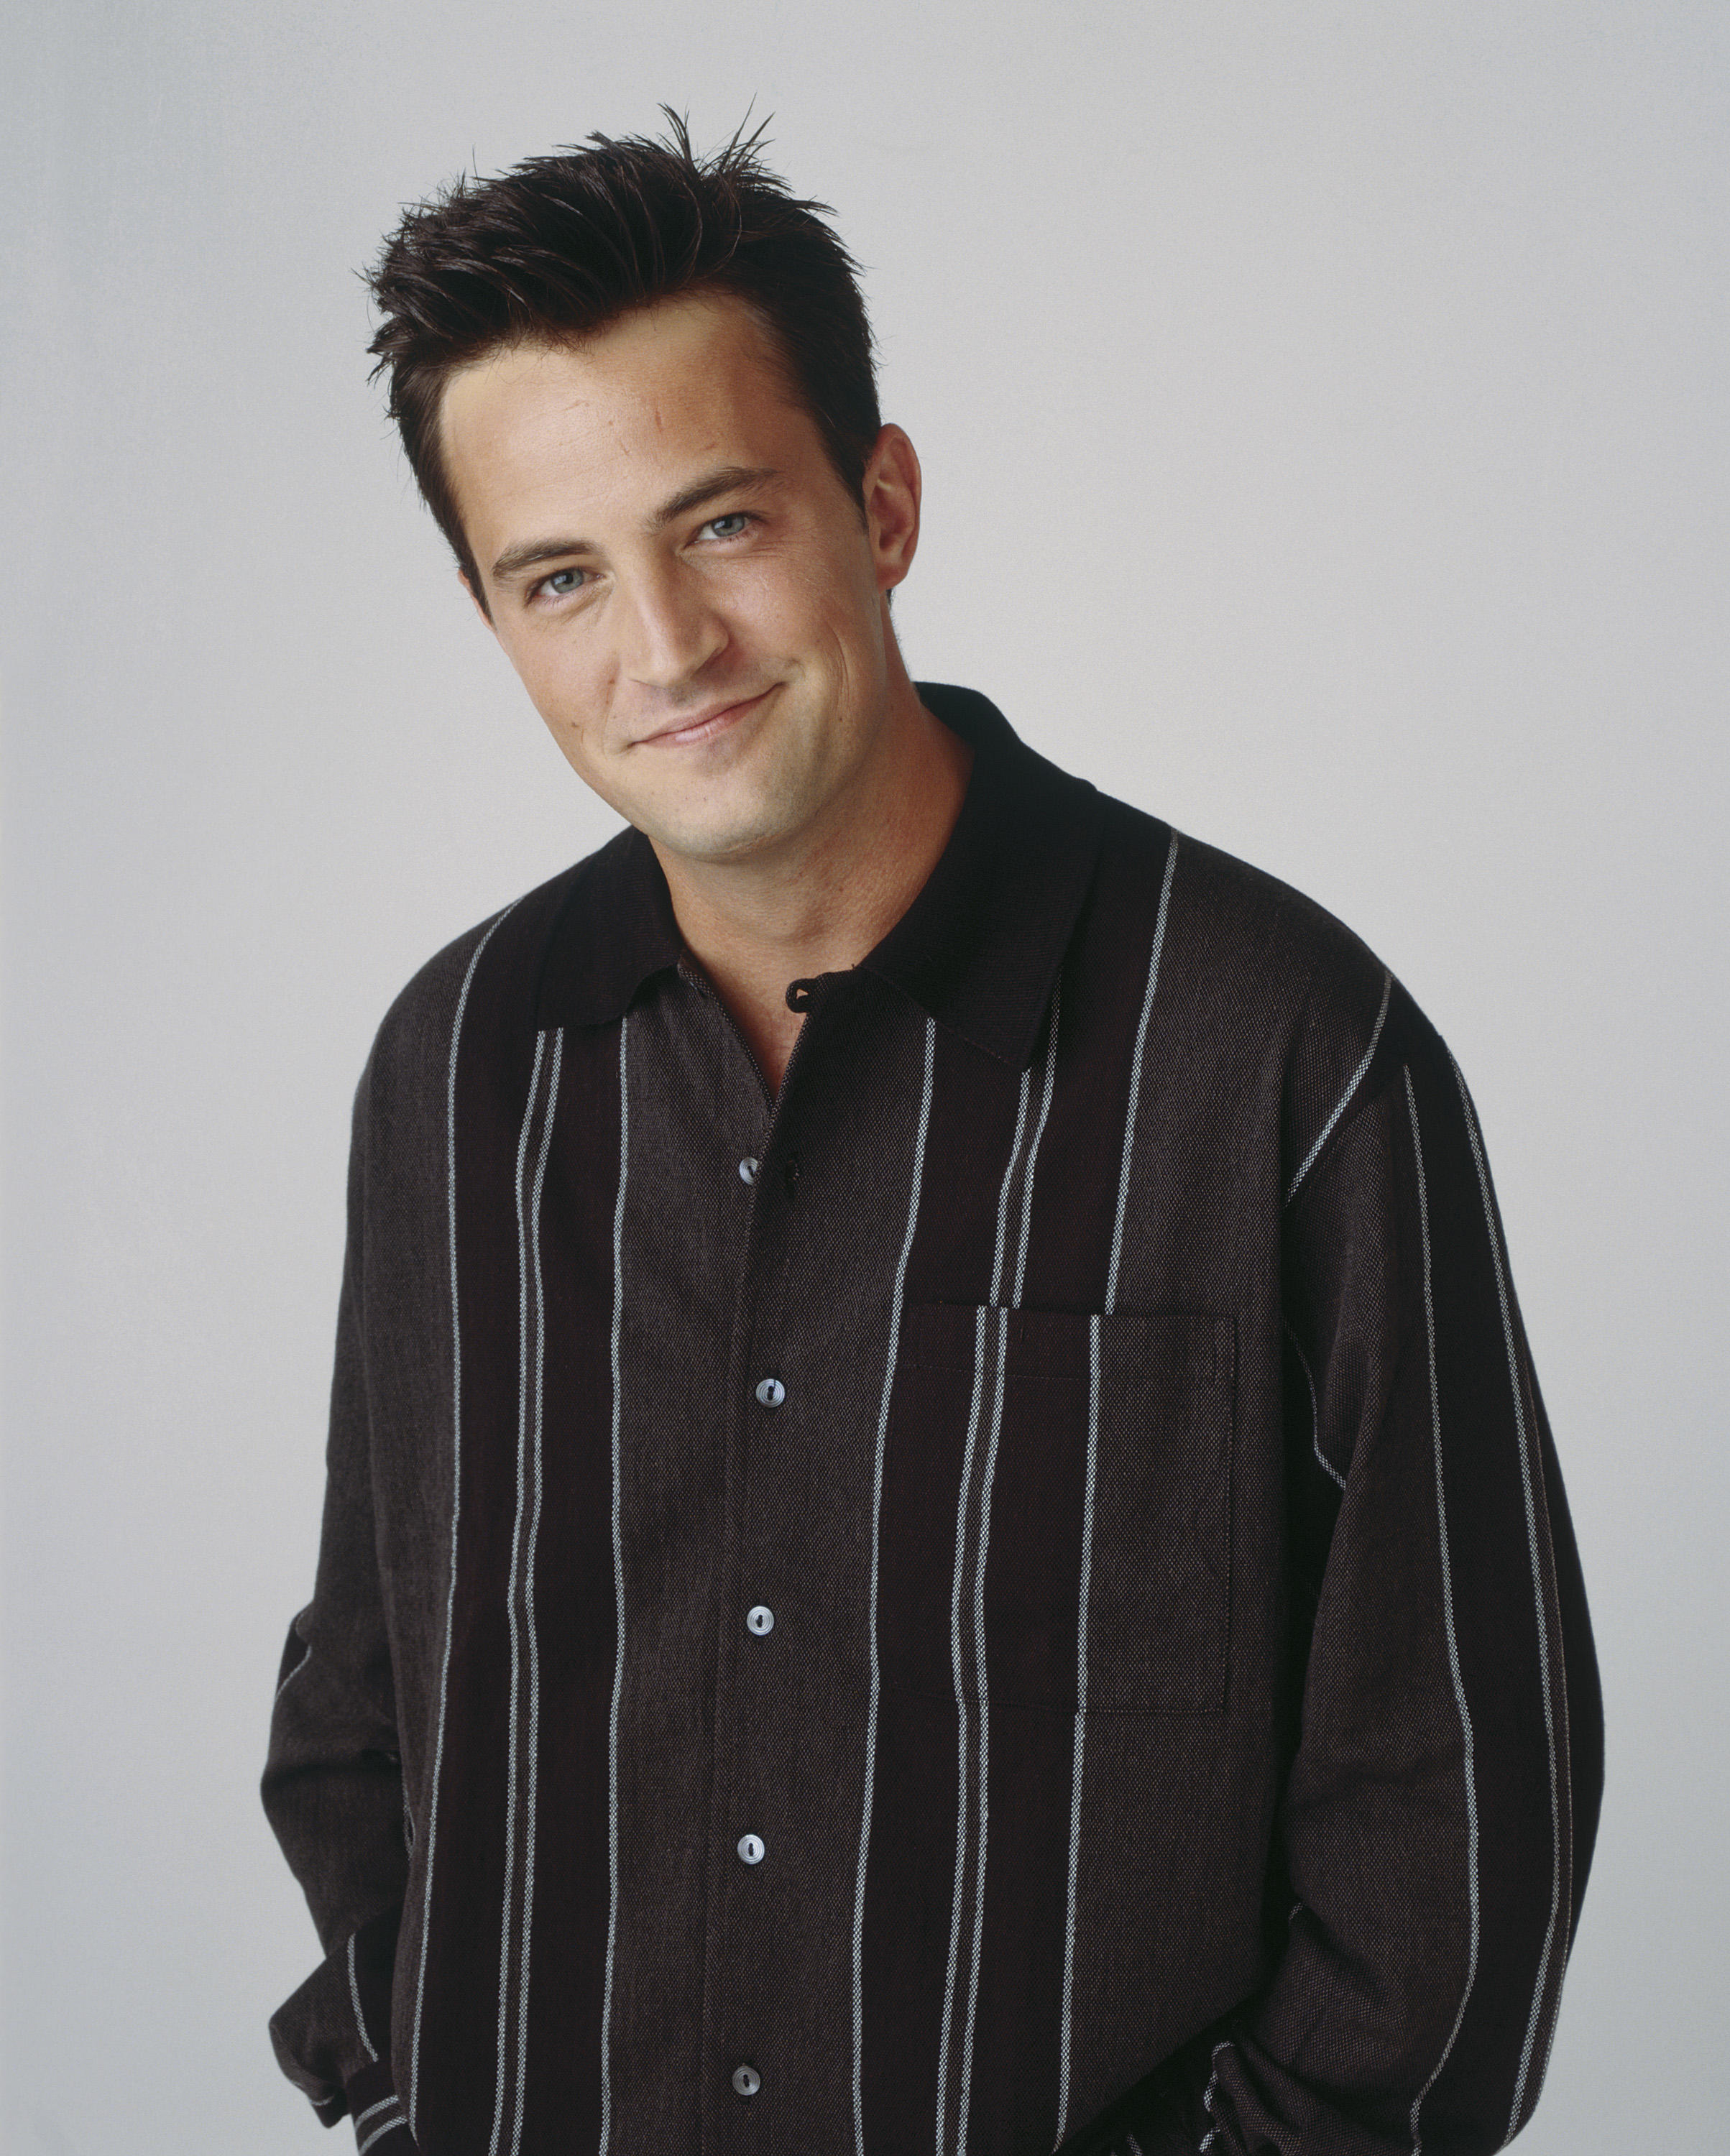 Matthew ist vor allem für seine Rolle als Chandler Bing in der Fernsehserie Friends bekannt